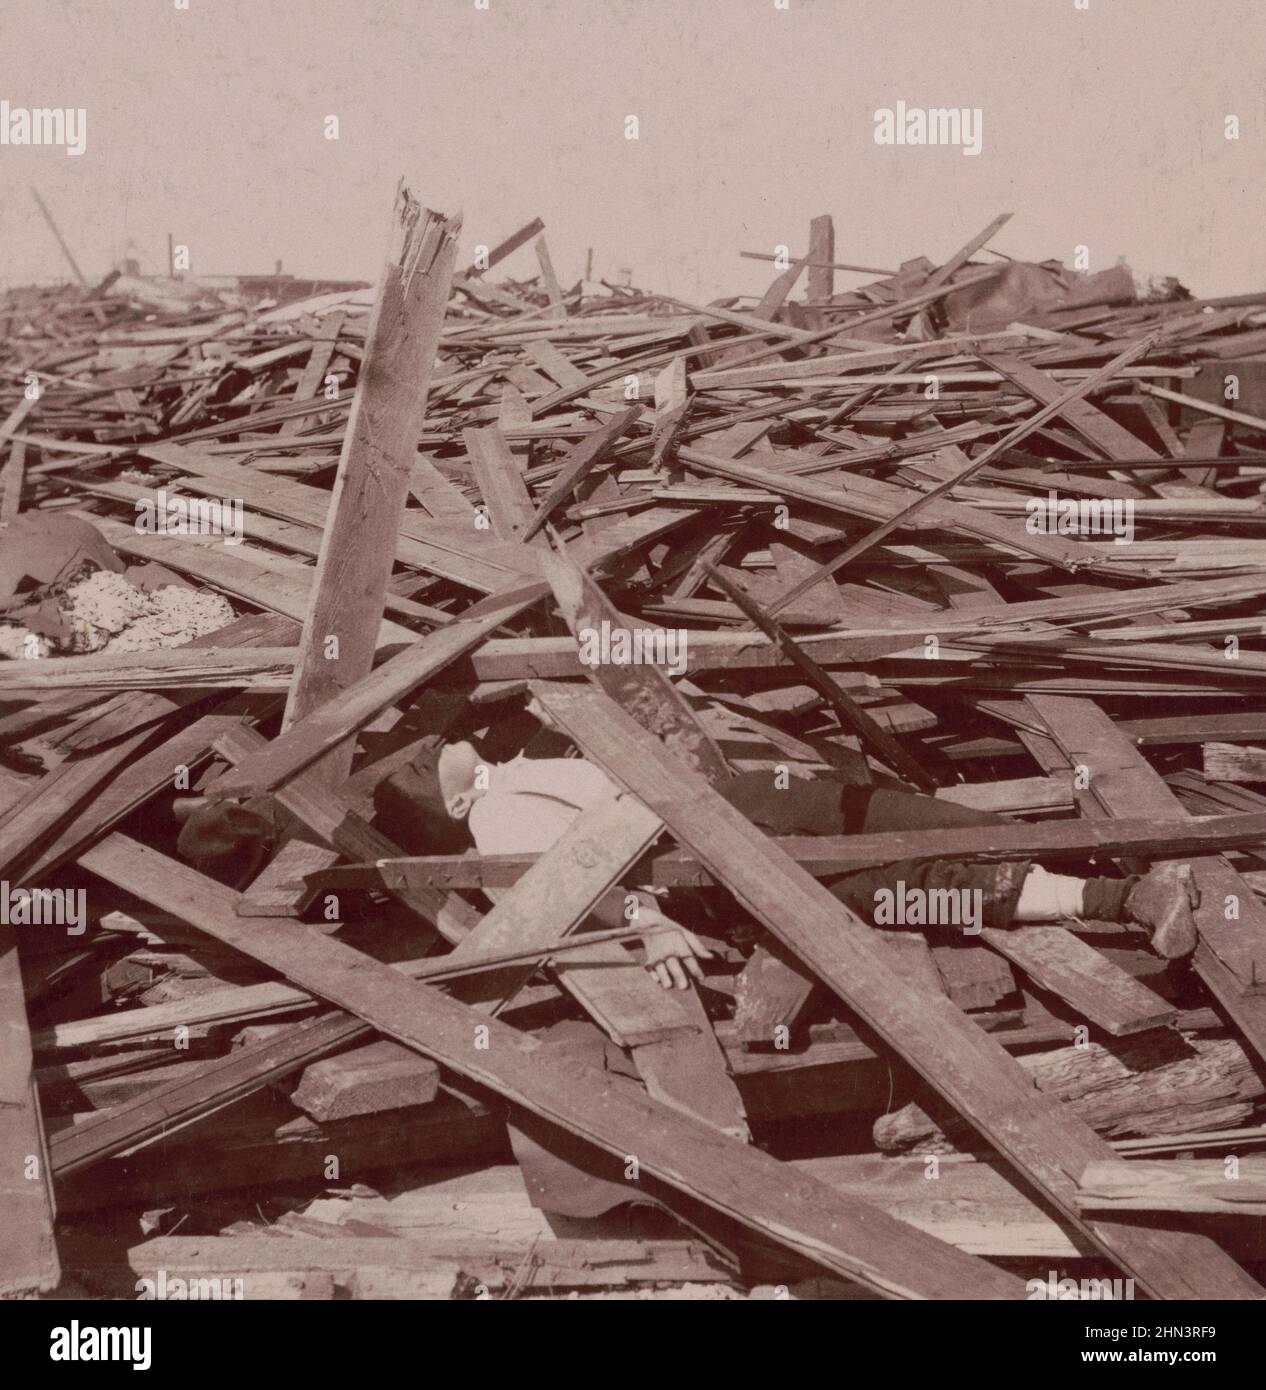 Photo d'époque de Galveston Disaster, homme mort sous une vaste pile de planches de bois après l'ouragan Galveston de 1900. ÉTATS-UNIS Banque D'Images